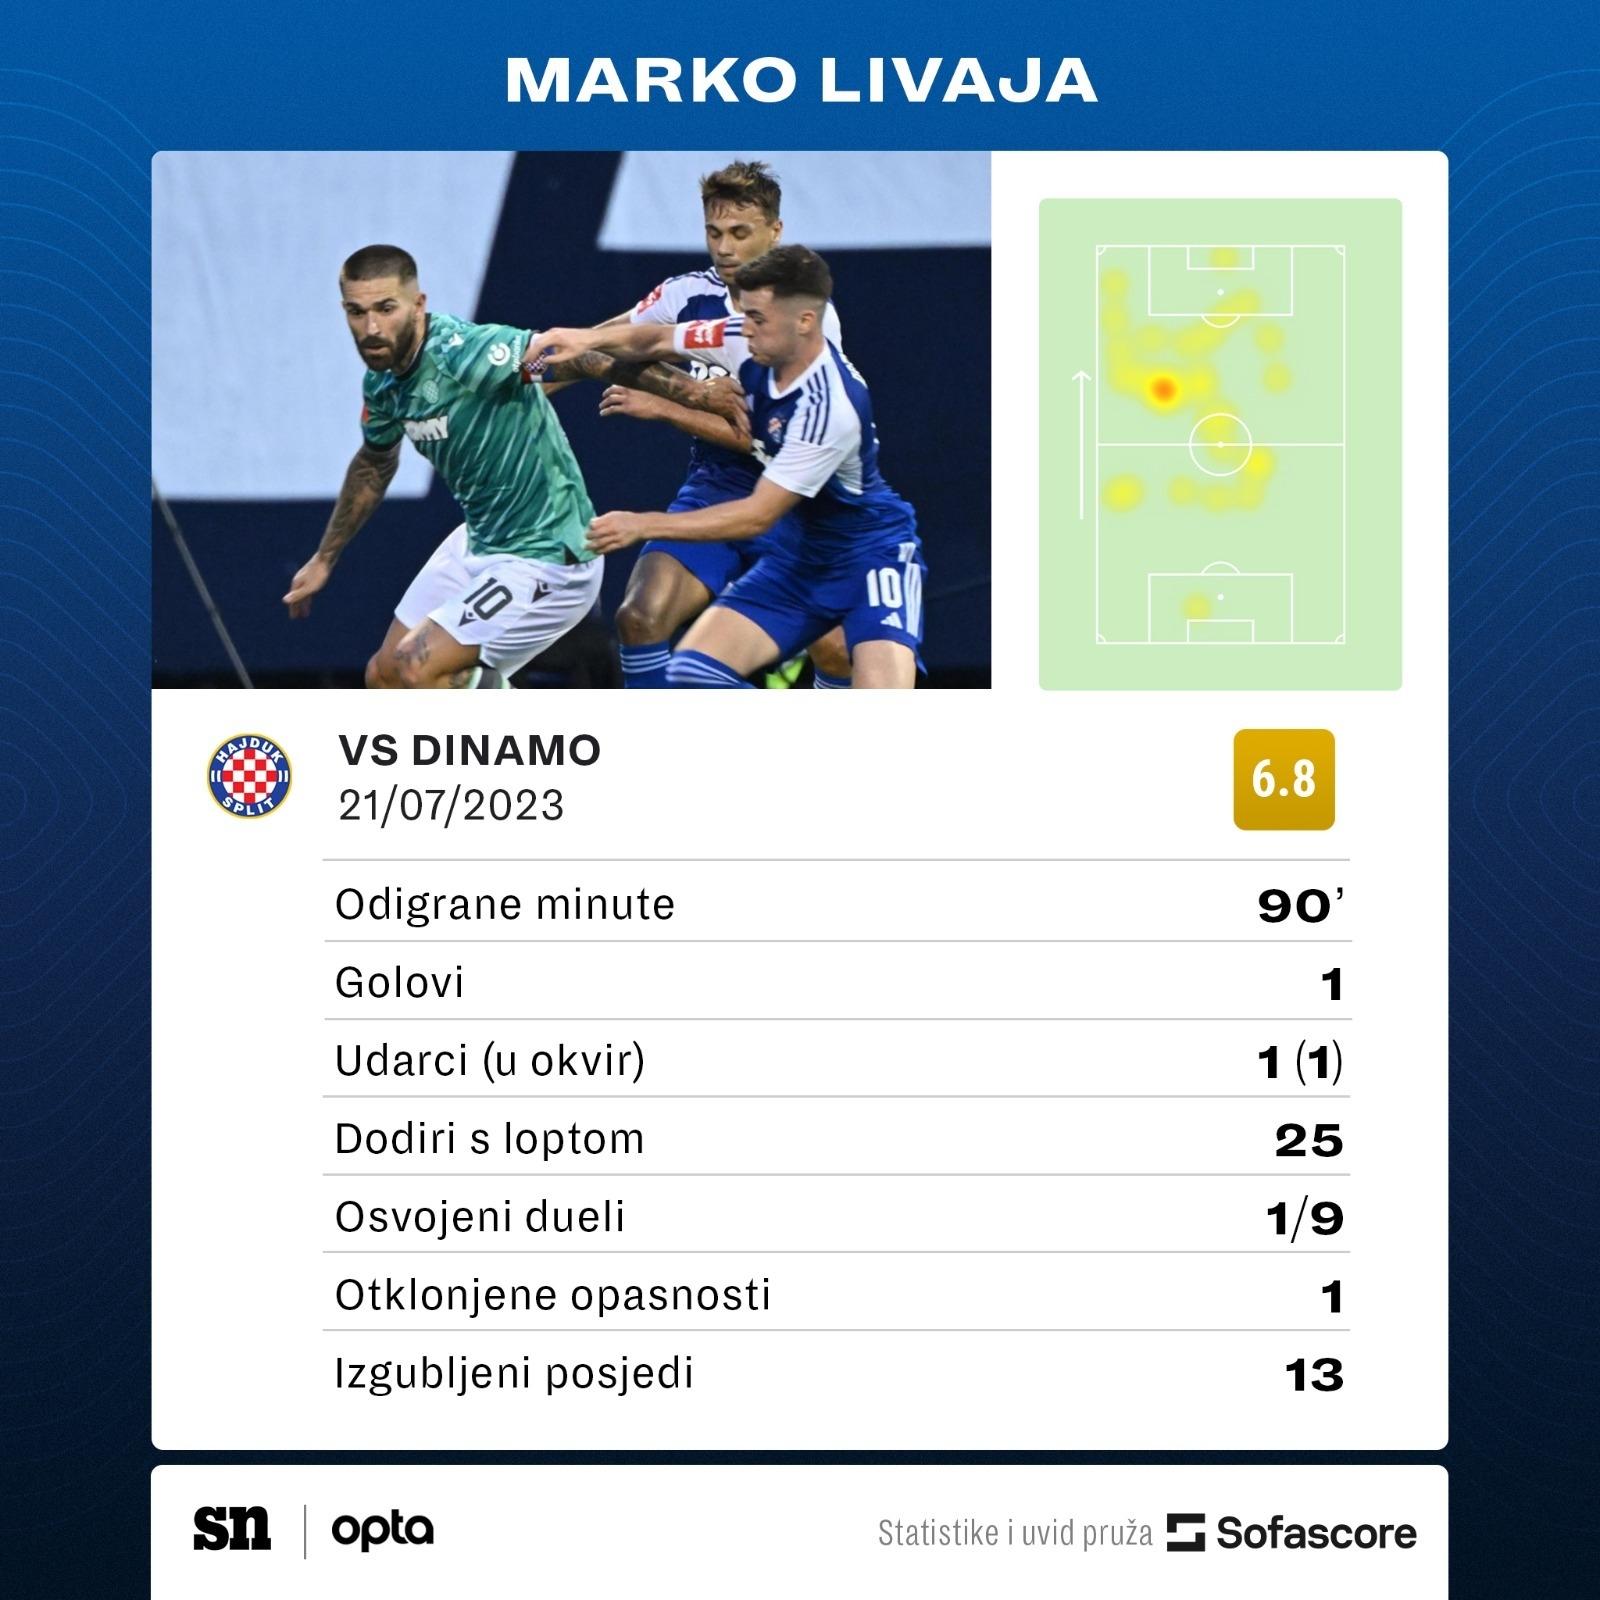 GNK Dinamo Zagreb 1 - [1] HNK Hajduk Split - Marko Livaja [Great